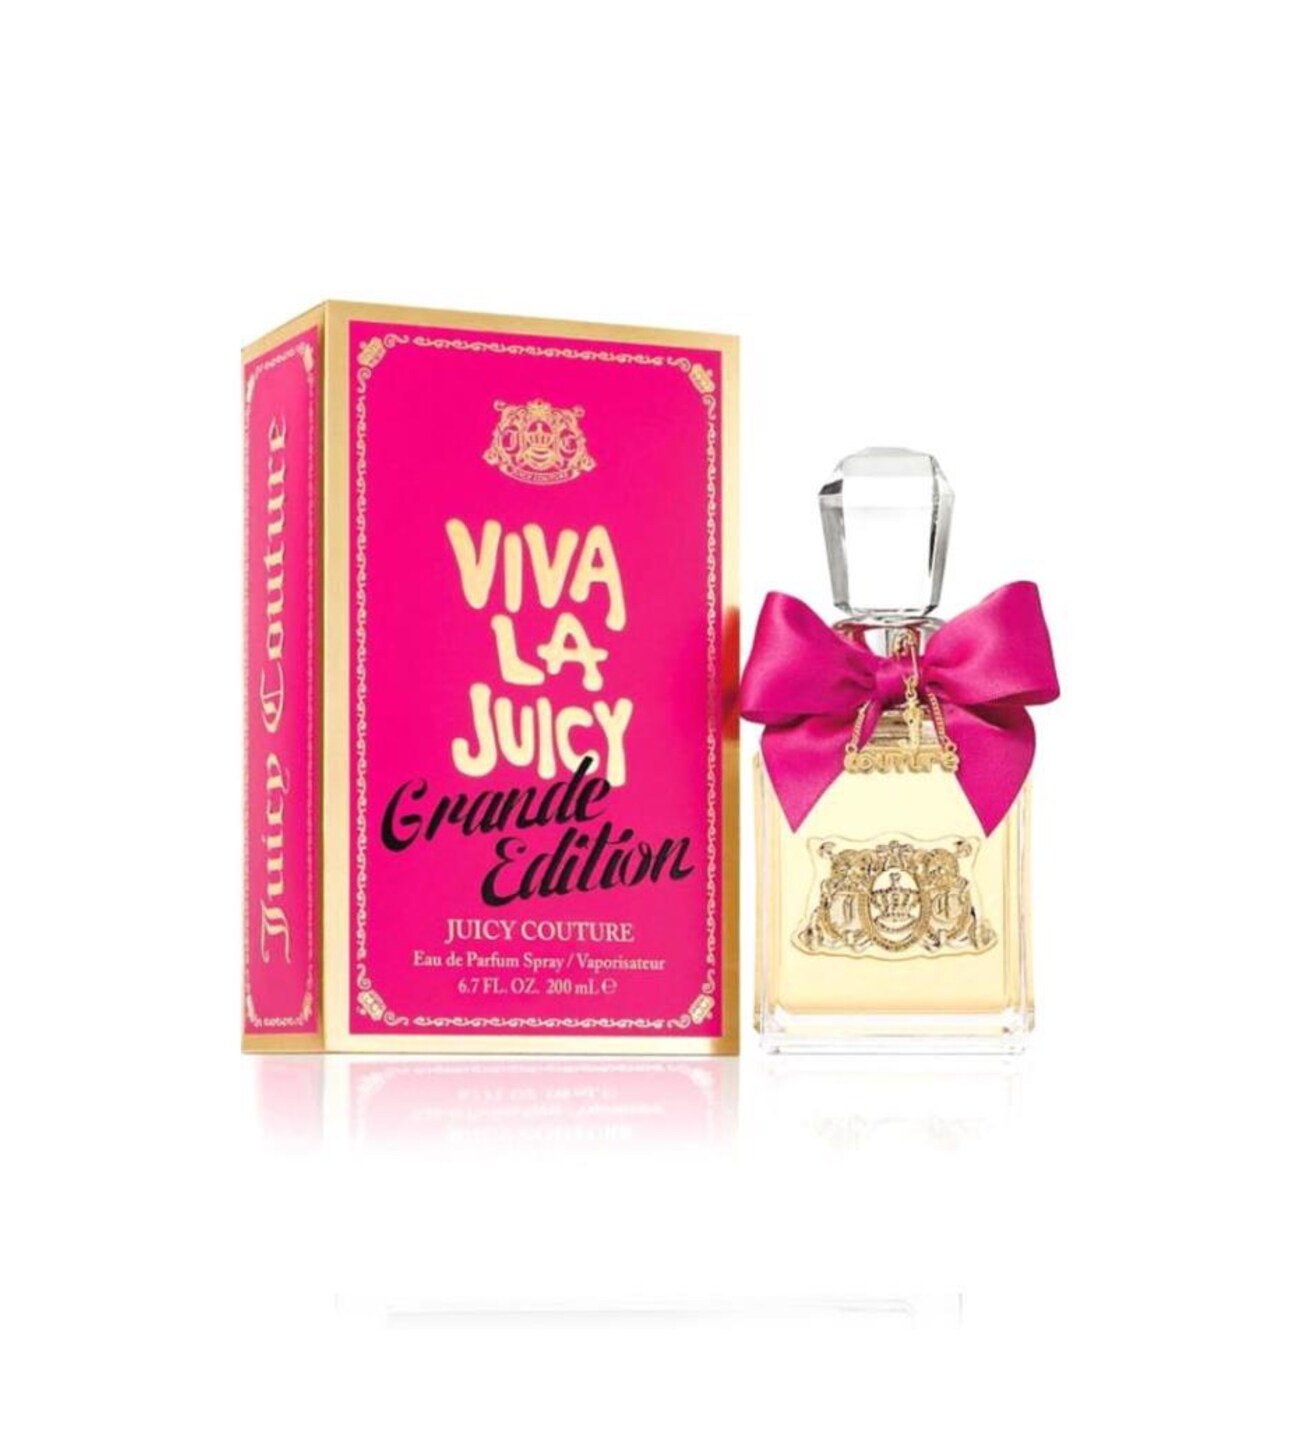 Juicy Couture Viva La Juicy Grande Edition edp